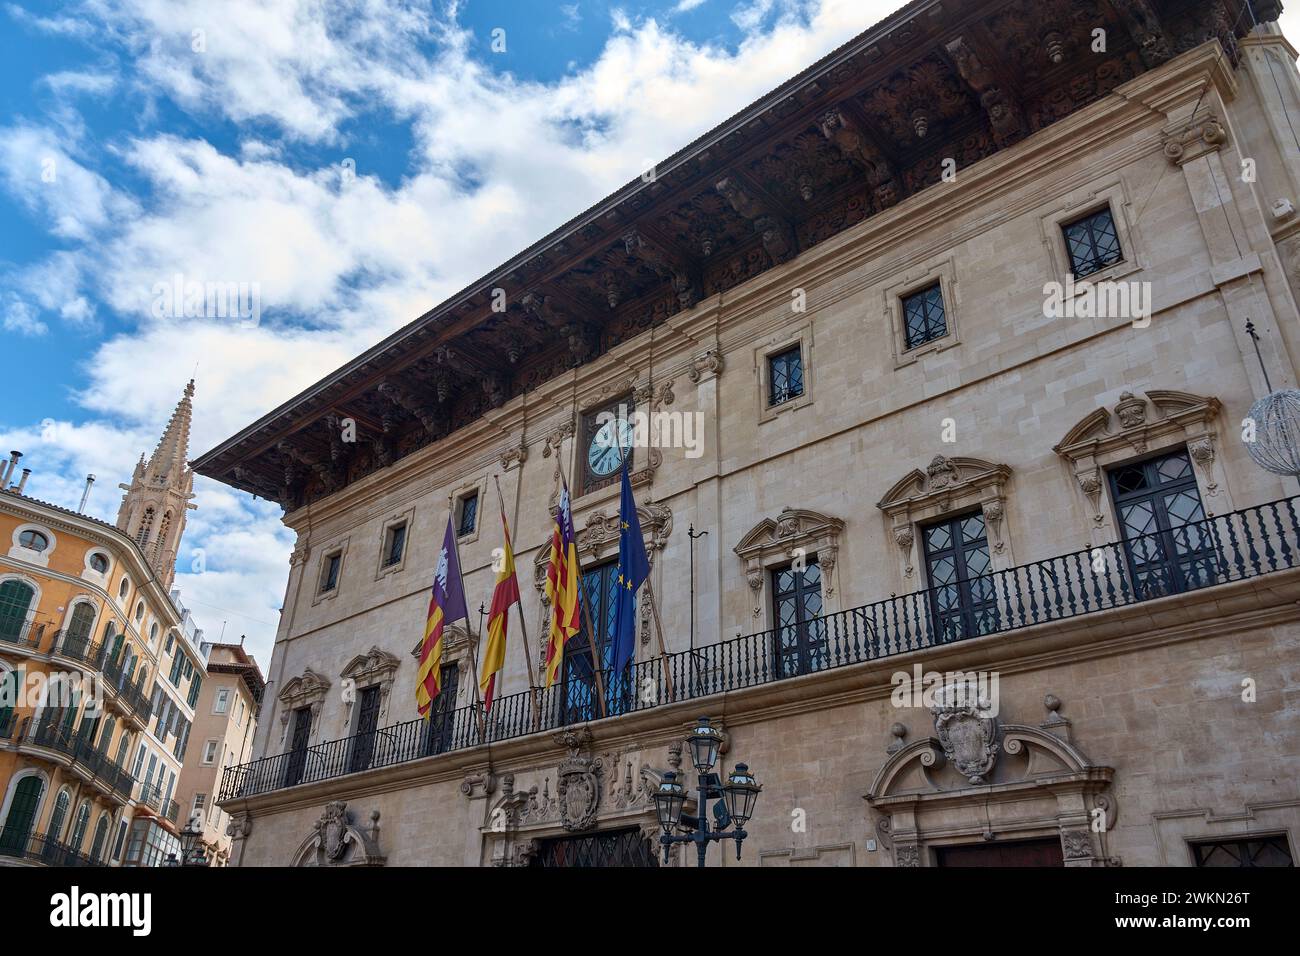 Facciata del municipio di Palma, edificio barocco situato in Plaza de Cort, nell'isola di Maiorca della comunità autonoma delle Baleari Foto Stock